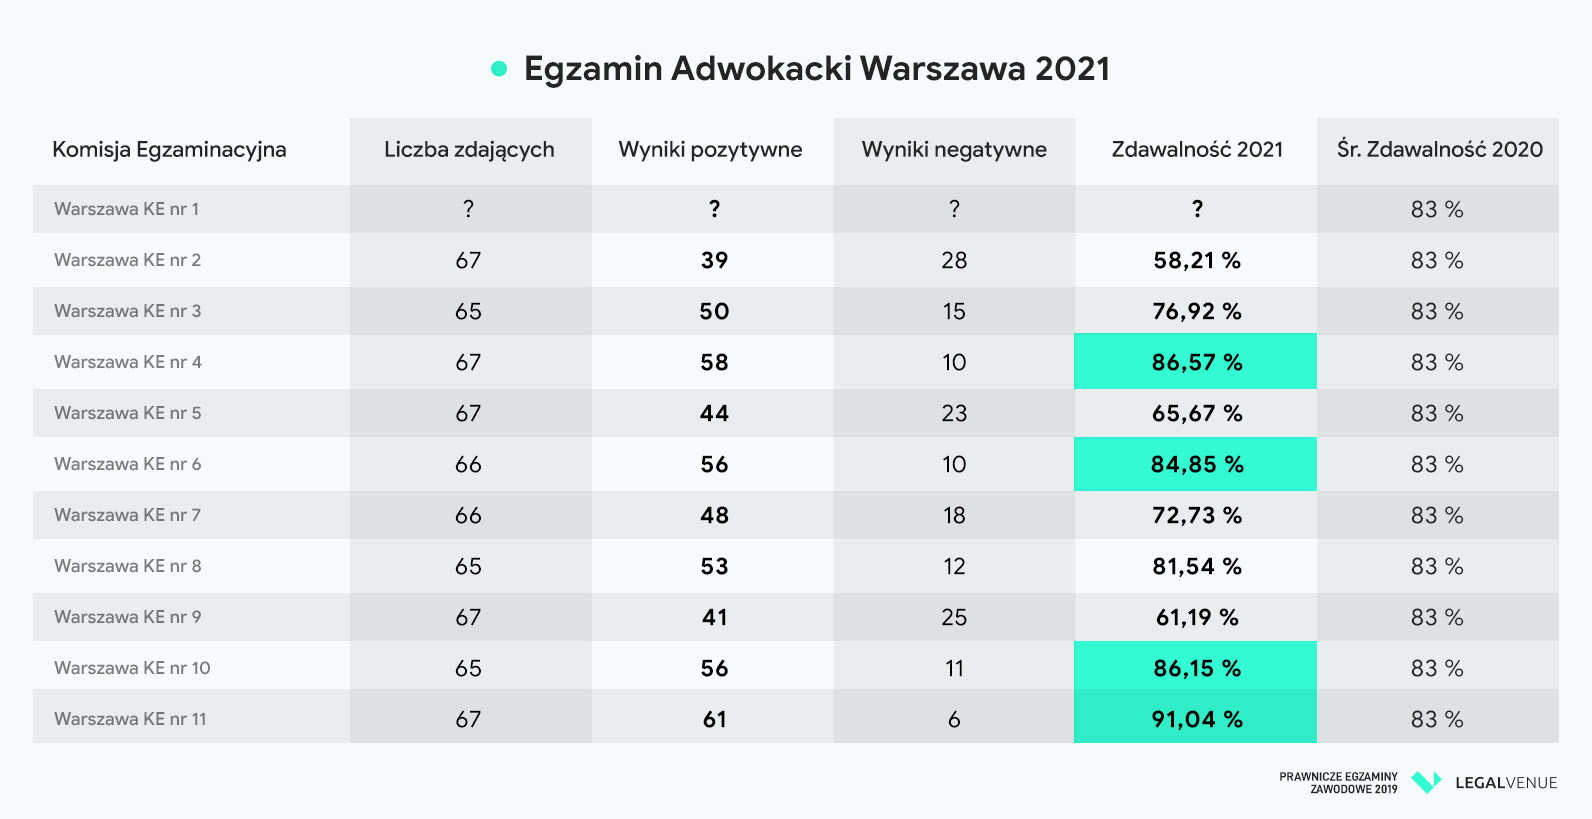 egzamin adwokacki egzamin radcowski 2020 2021 wyniki warszawa